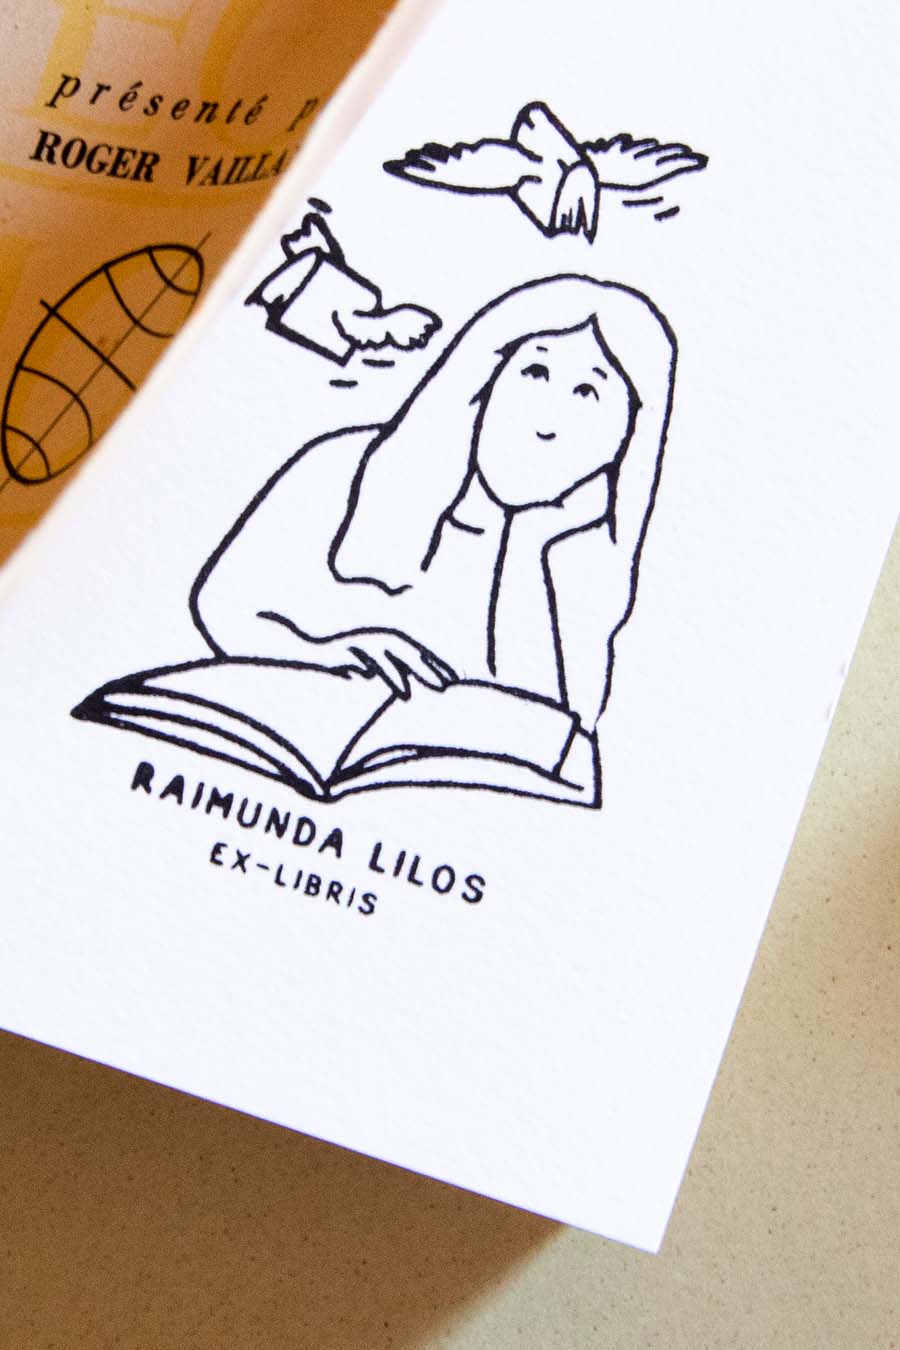 Portadilla de libro estampada con sello exlibris de una mujer leyendo un libro, con dos libros volando sobre ella